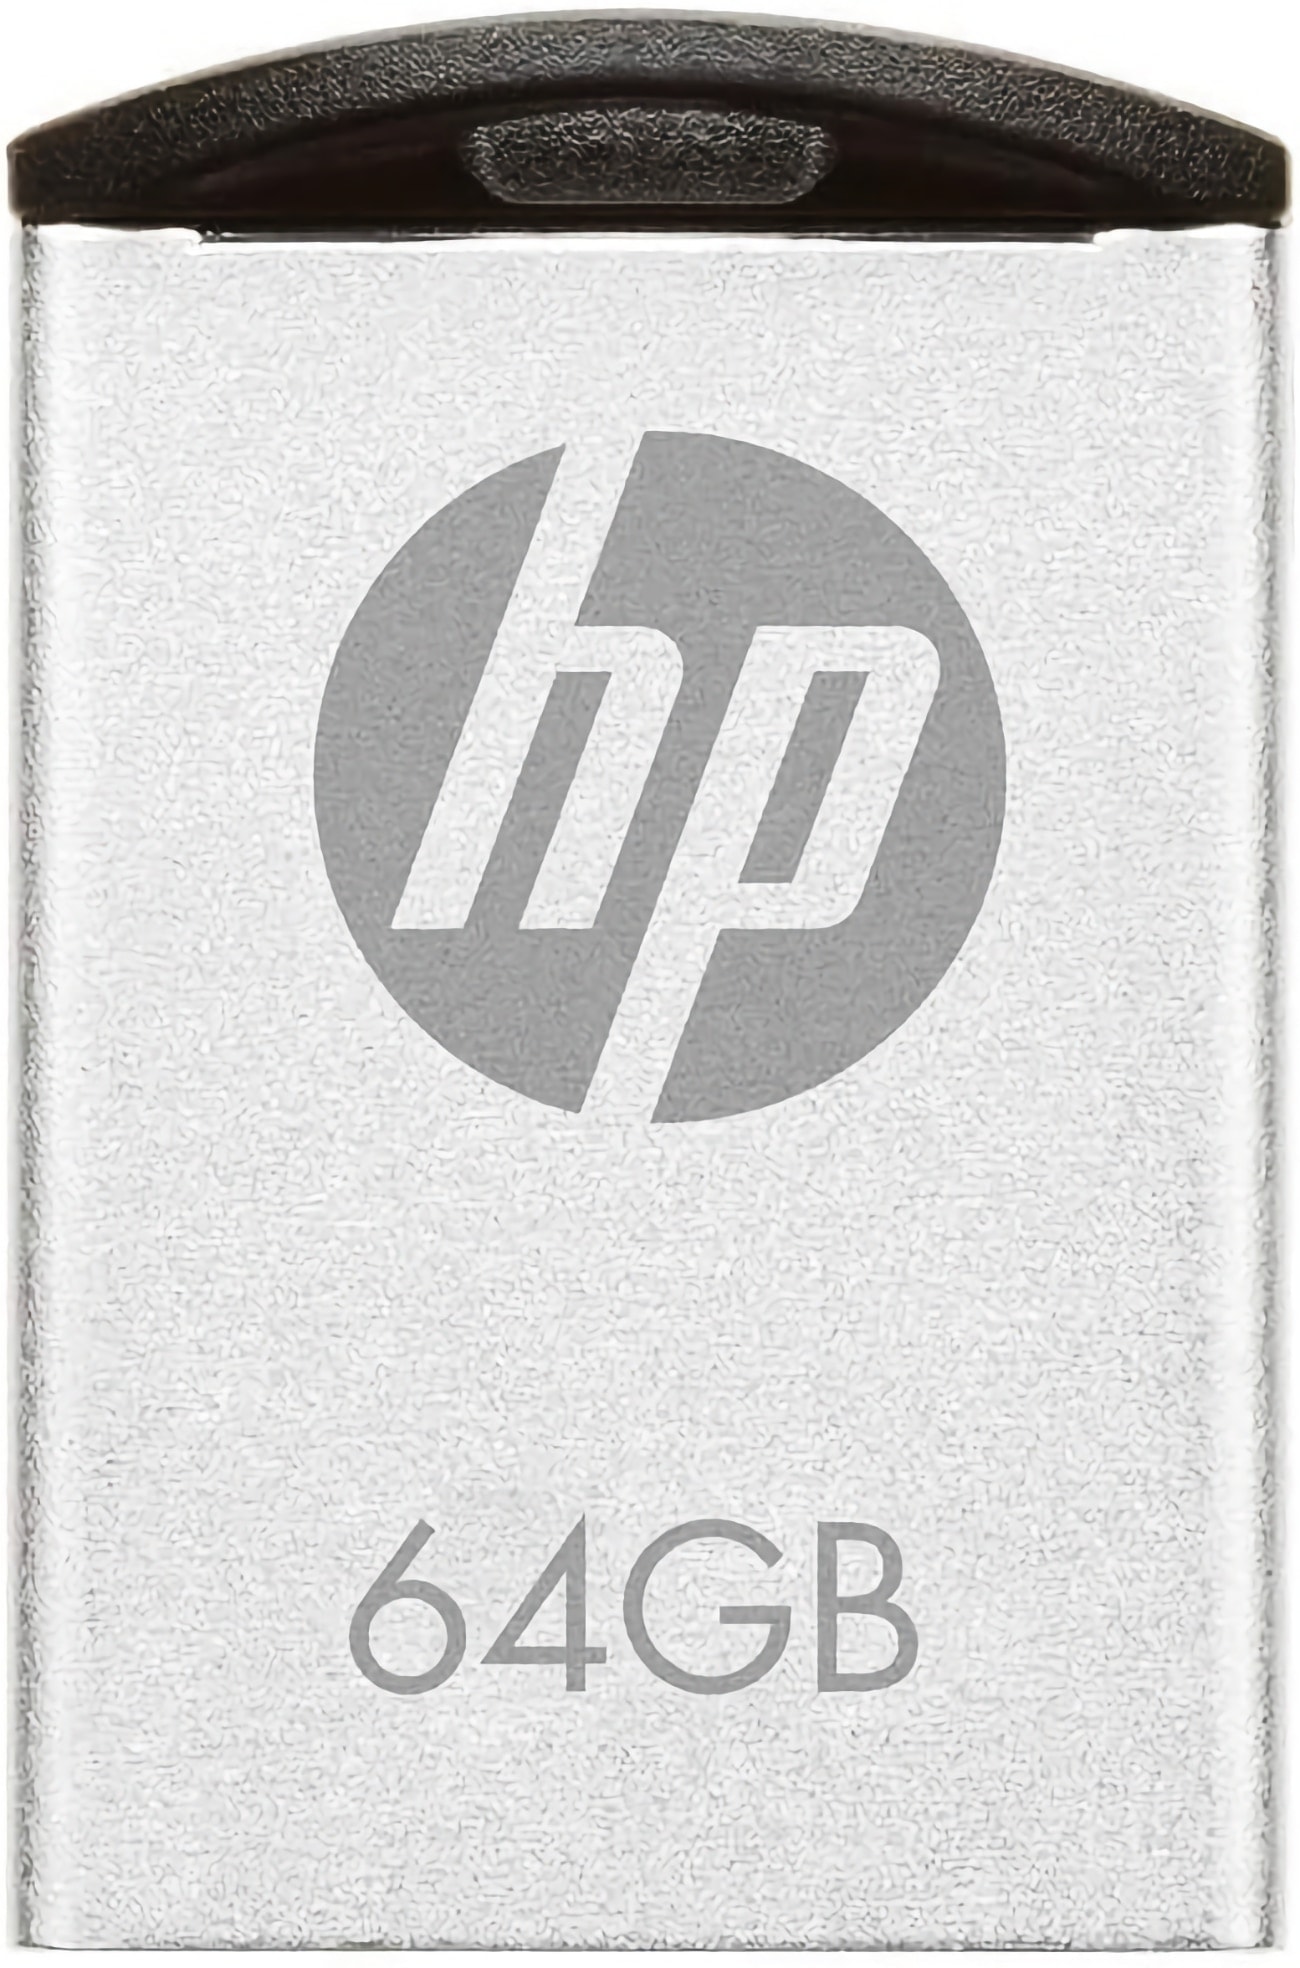 HP Memoria USB GB USB 2.0 Super Mini Metal, a Prueba de Golpes, a Prueba de Salpicaduras